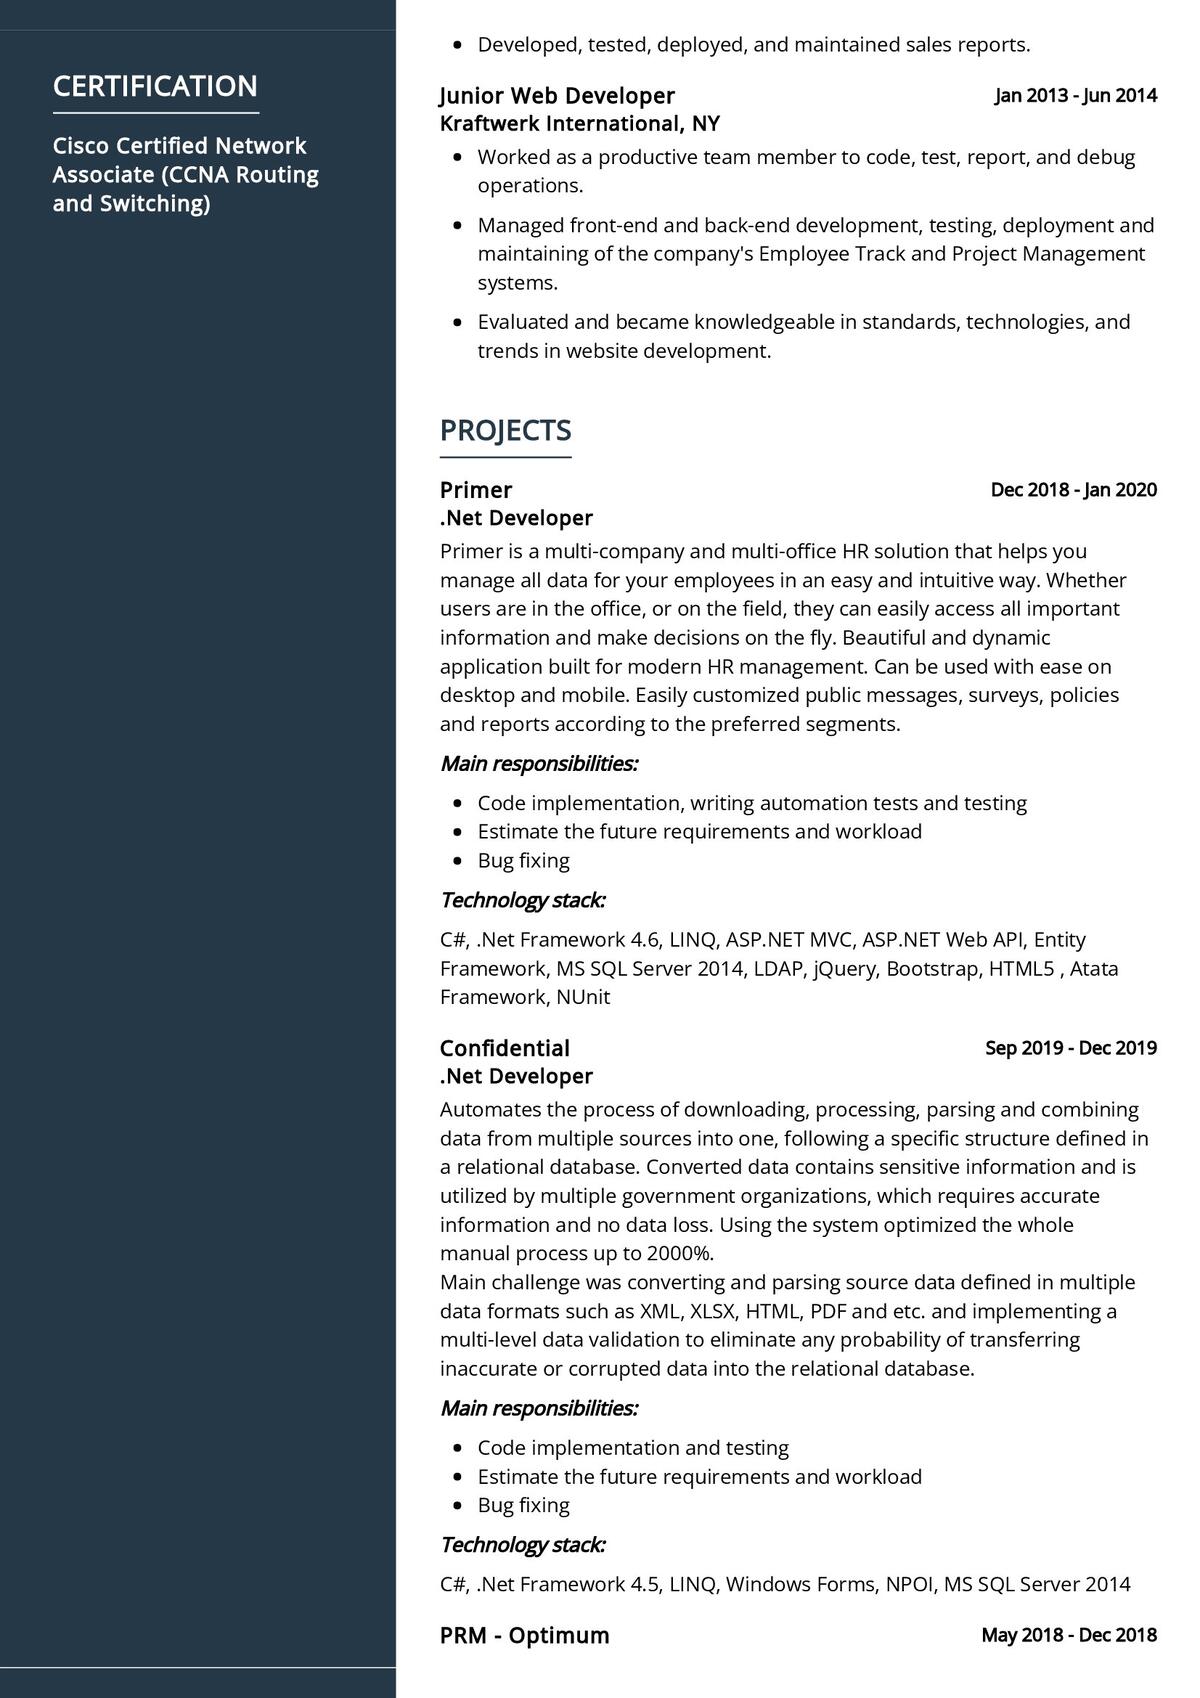 sample resume for asp.net developer fresher